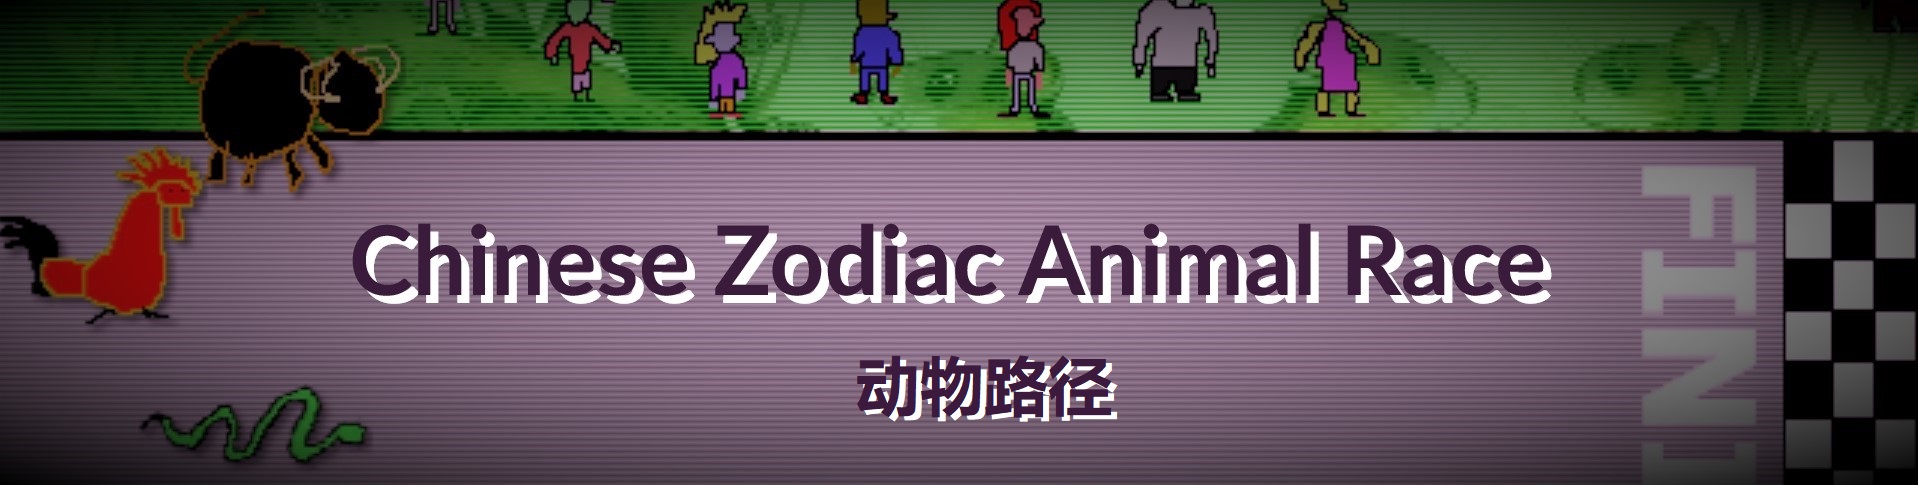 Chinese Zodiac Animal Race